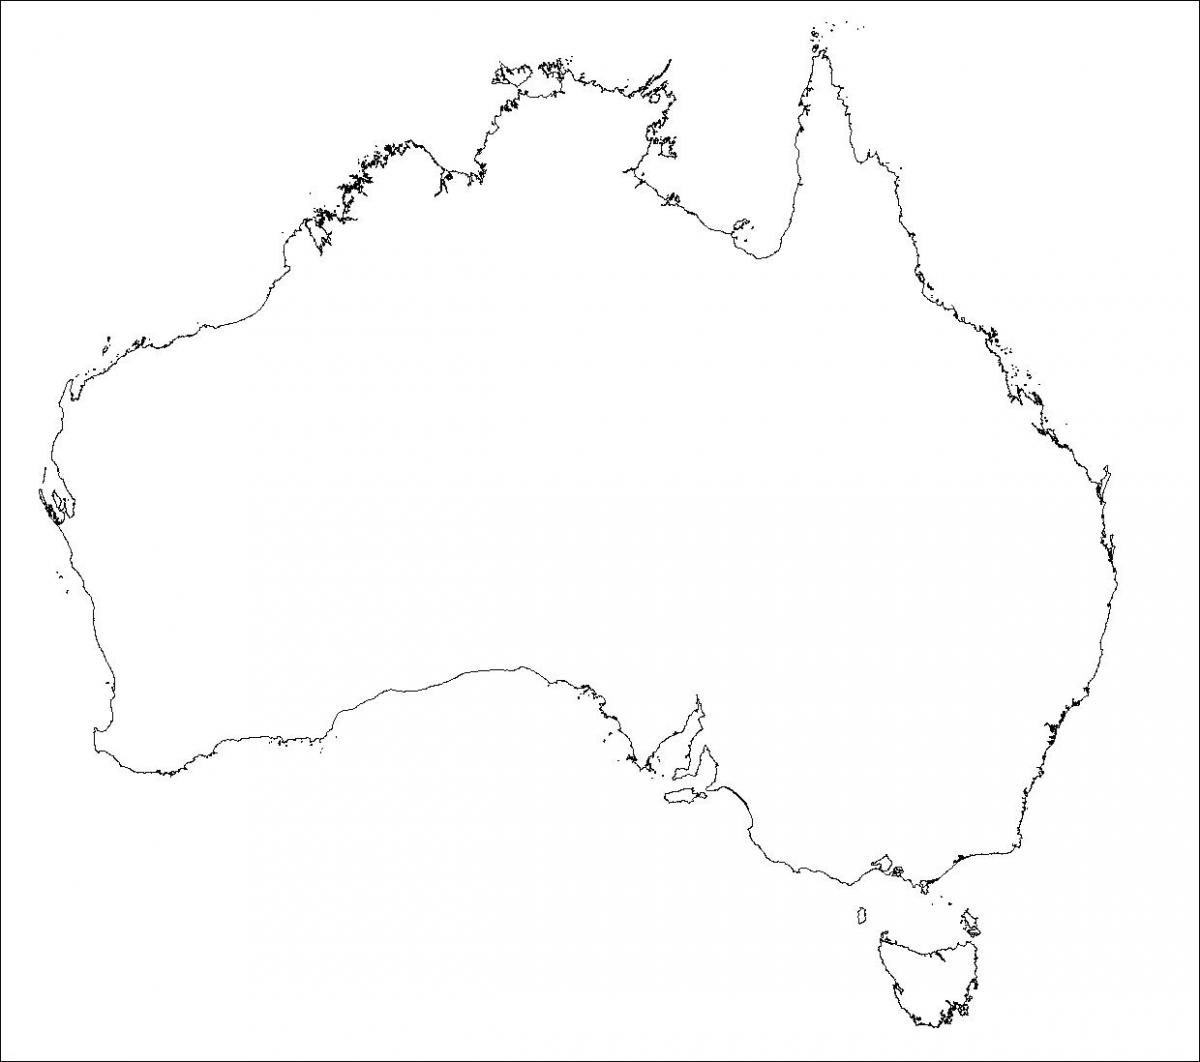 Mapa de curvas de nível na Austrália